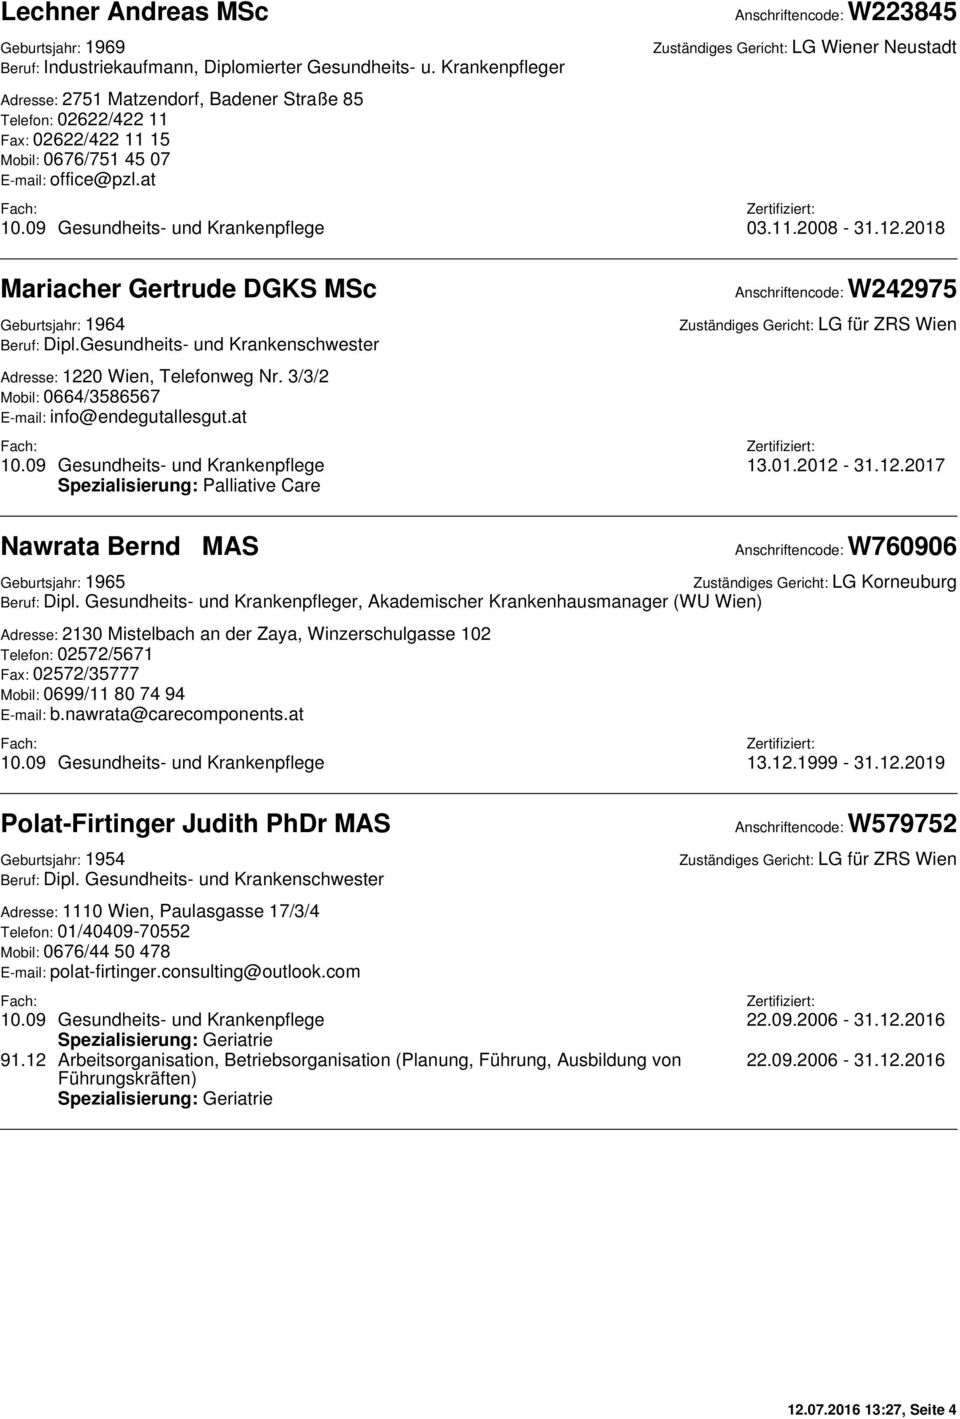 at Anschriftencode: W223845 Zuständiges Gericht: LG Wiener Neustadt 10.09 Gesundheits- und Krankenpflege 03.11.2008-31.12.2018 Mariacher Gertrude DGKS MSc Geburtsjahr: 1964 Beruf: Dipl.